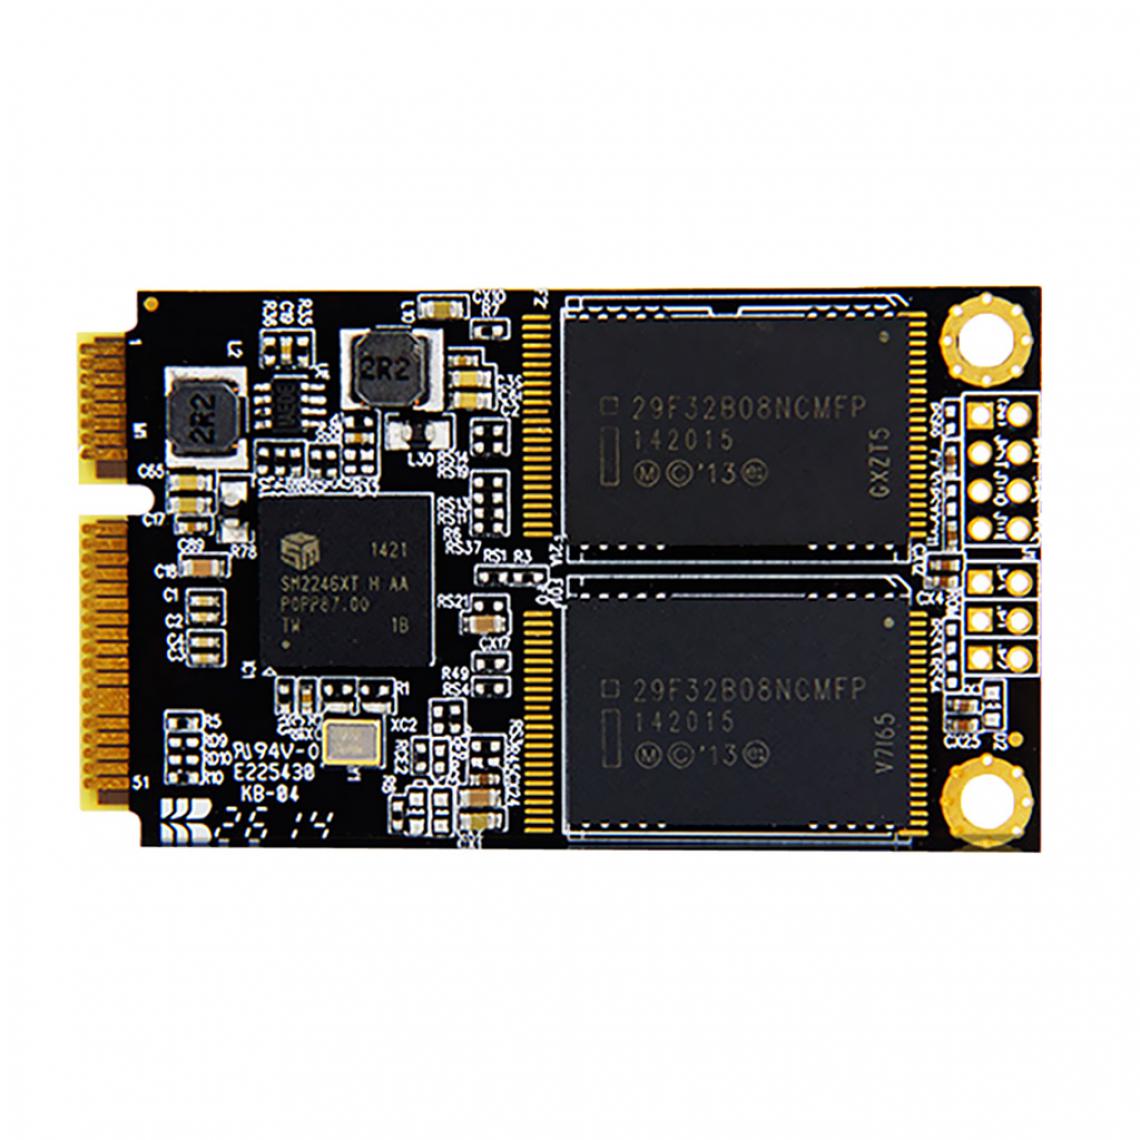 marque generique - 128GB Disque Dur SSD mSATA SMI2246XT / JMF608 pour Ordinateurs Portables /Ordinateurs de Bureau - Disque Dur interne